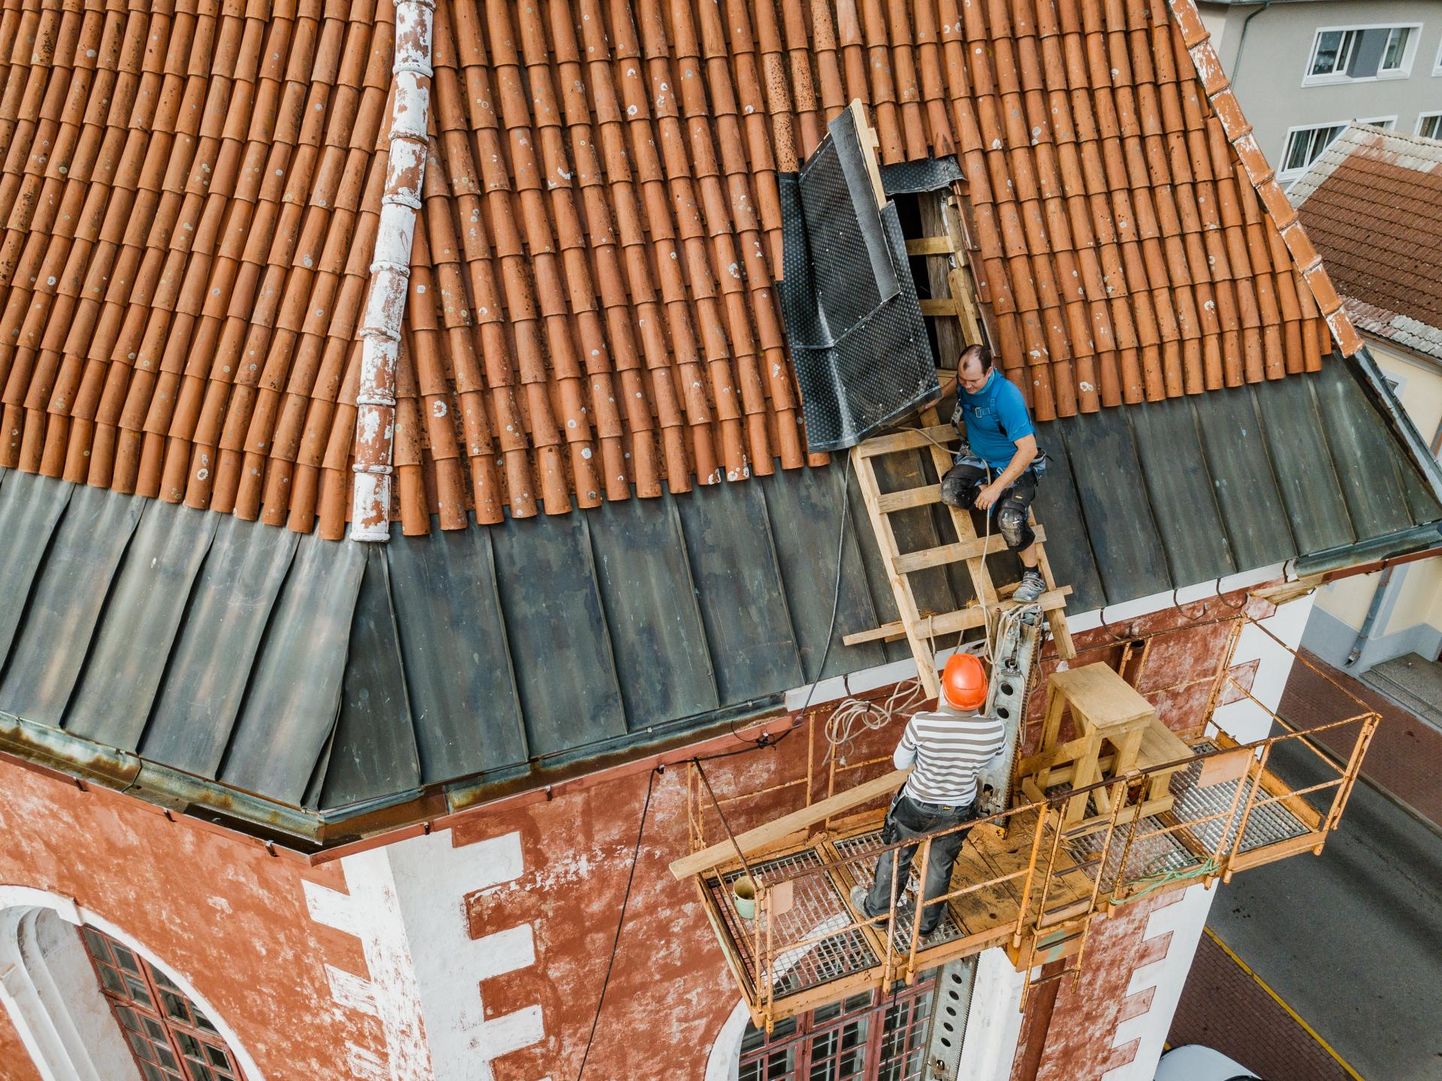 Pärnu Eliisabeti kiriku pööningul käib katusesõrestiku ja laetalade pehkinud osade proteesimine. Materjal taritakse katuse alla luugi ­kaudu kirikukantselei hoovist.